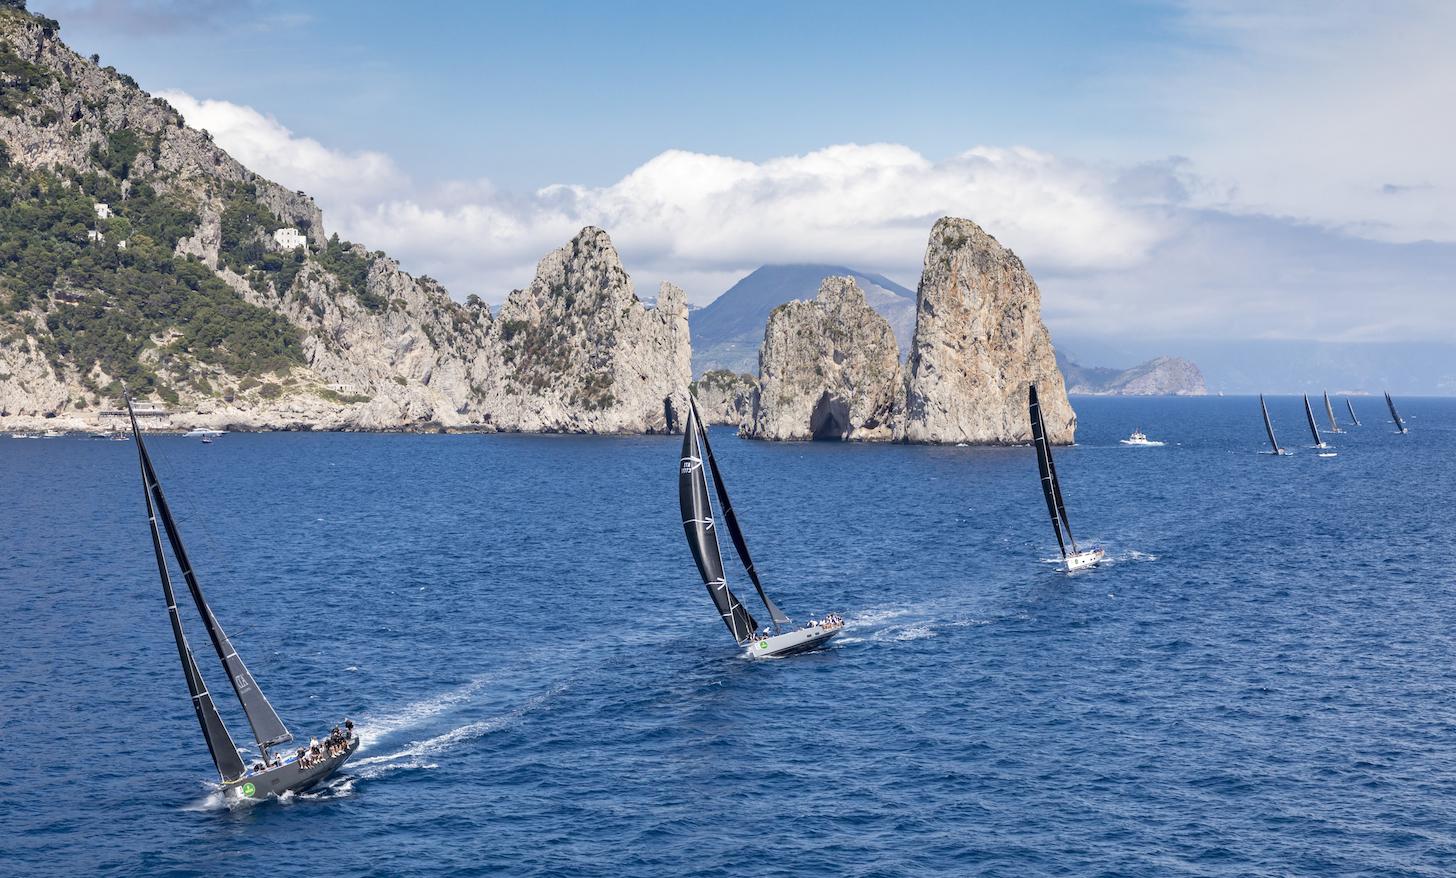  Presentata Rolex Capri Sailing Week, dal 10 al 18 maggio